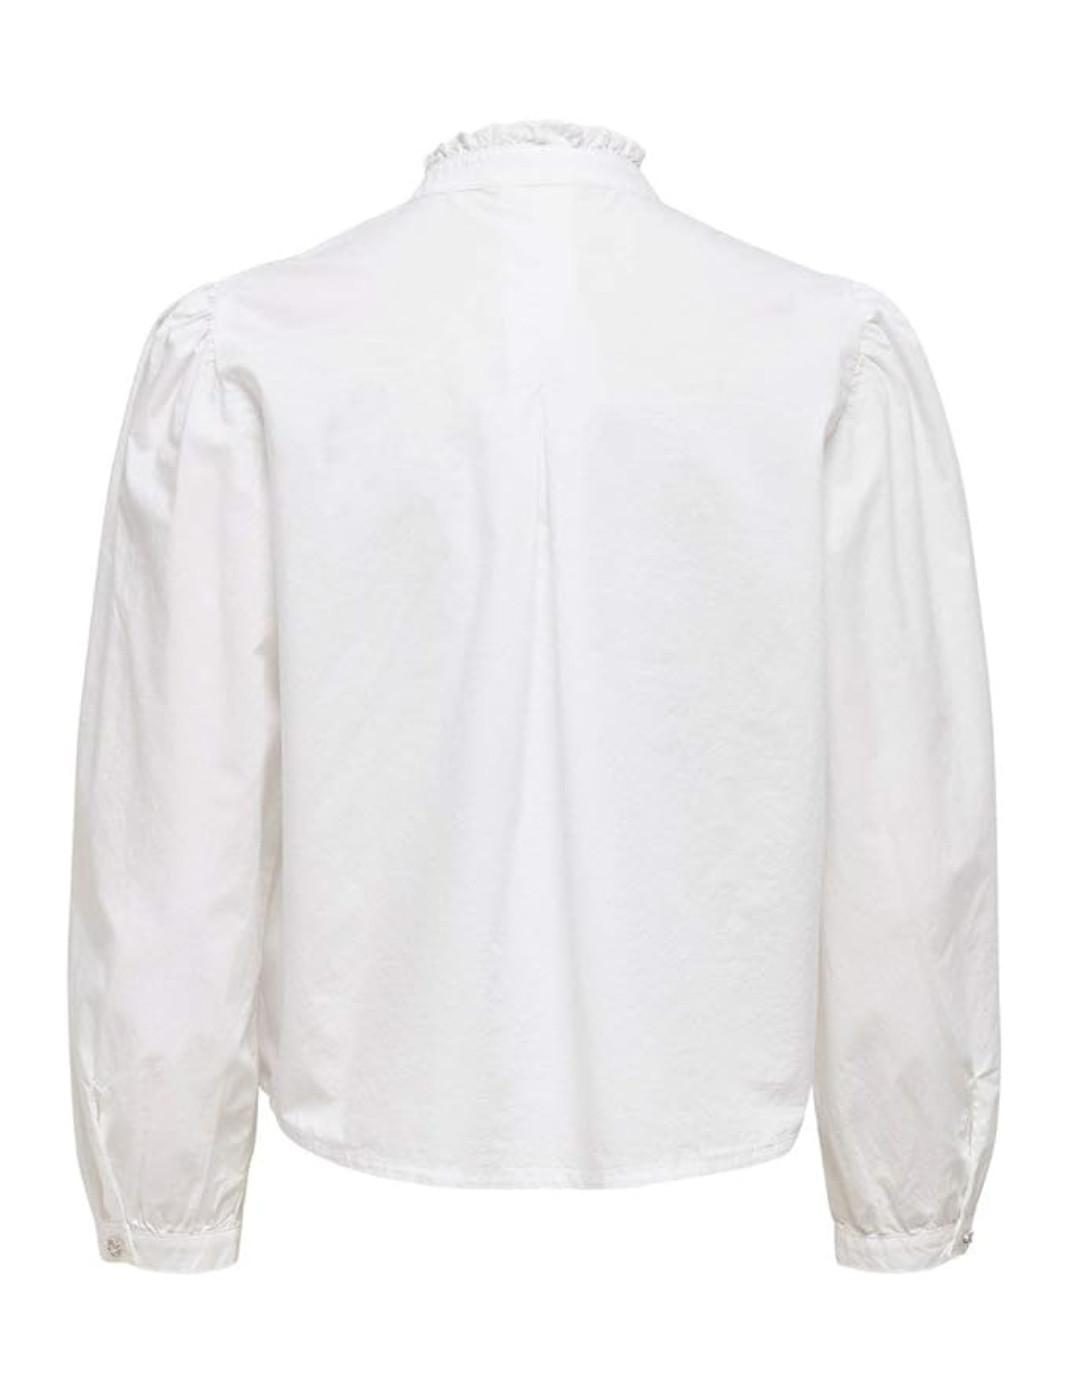 Camisa Only Wild encaje blanca cuello perkins para mujer